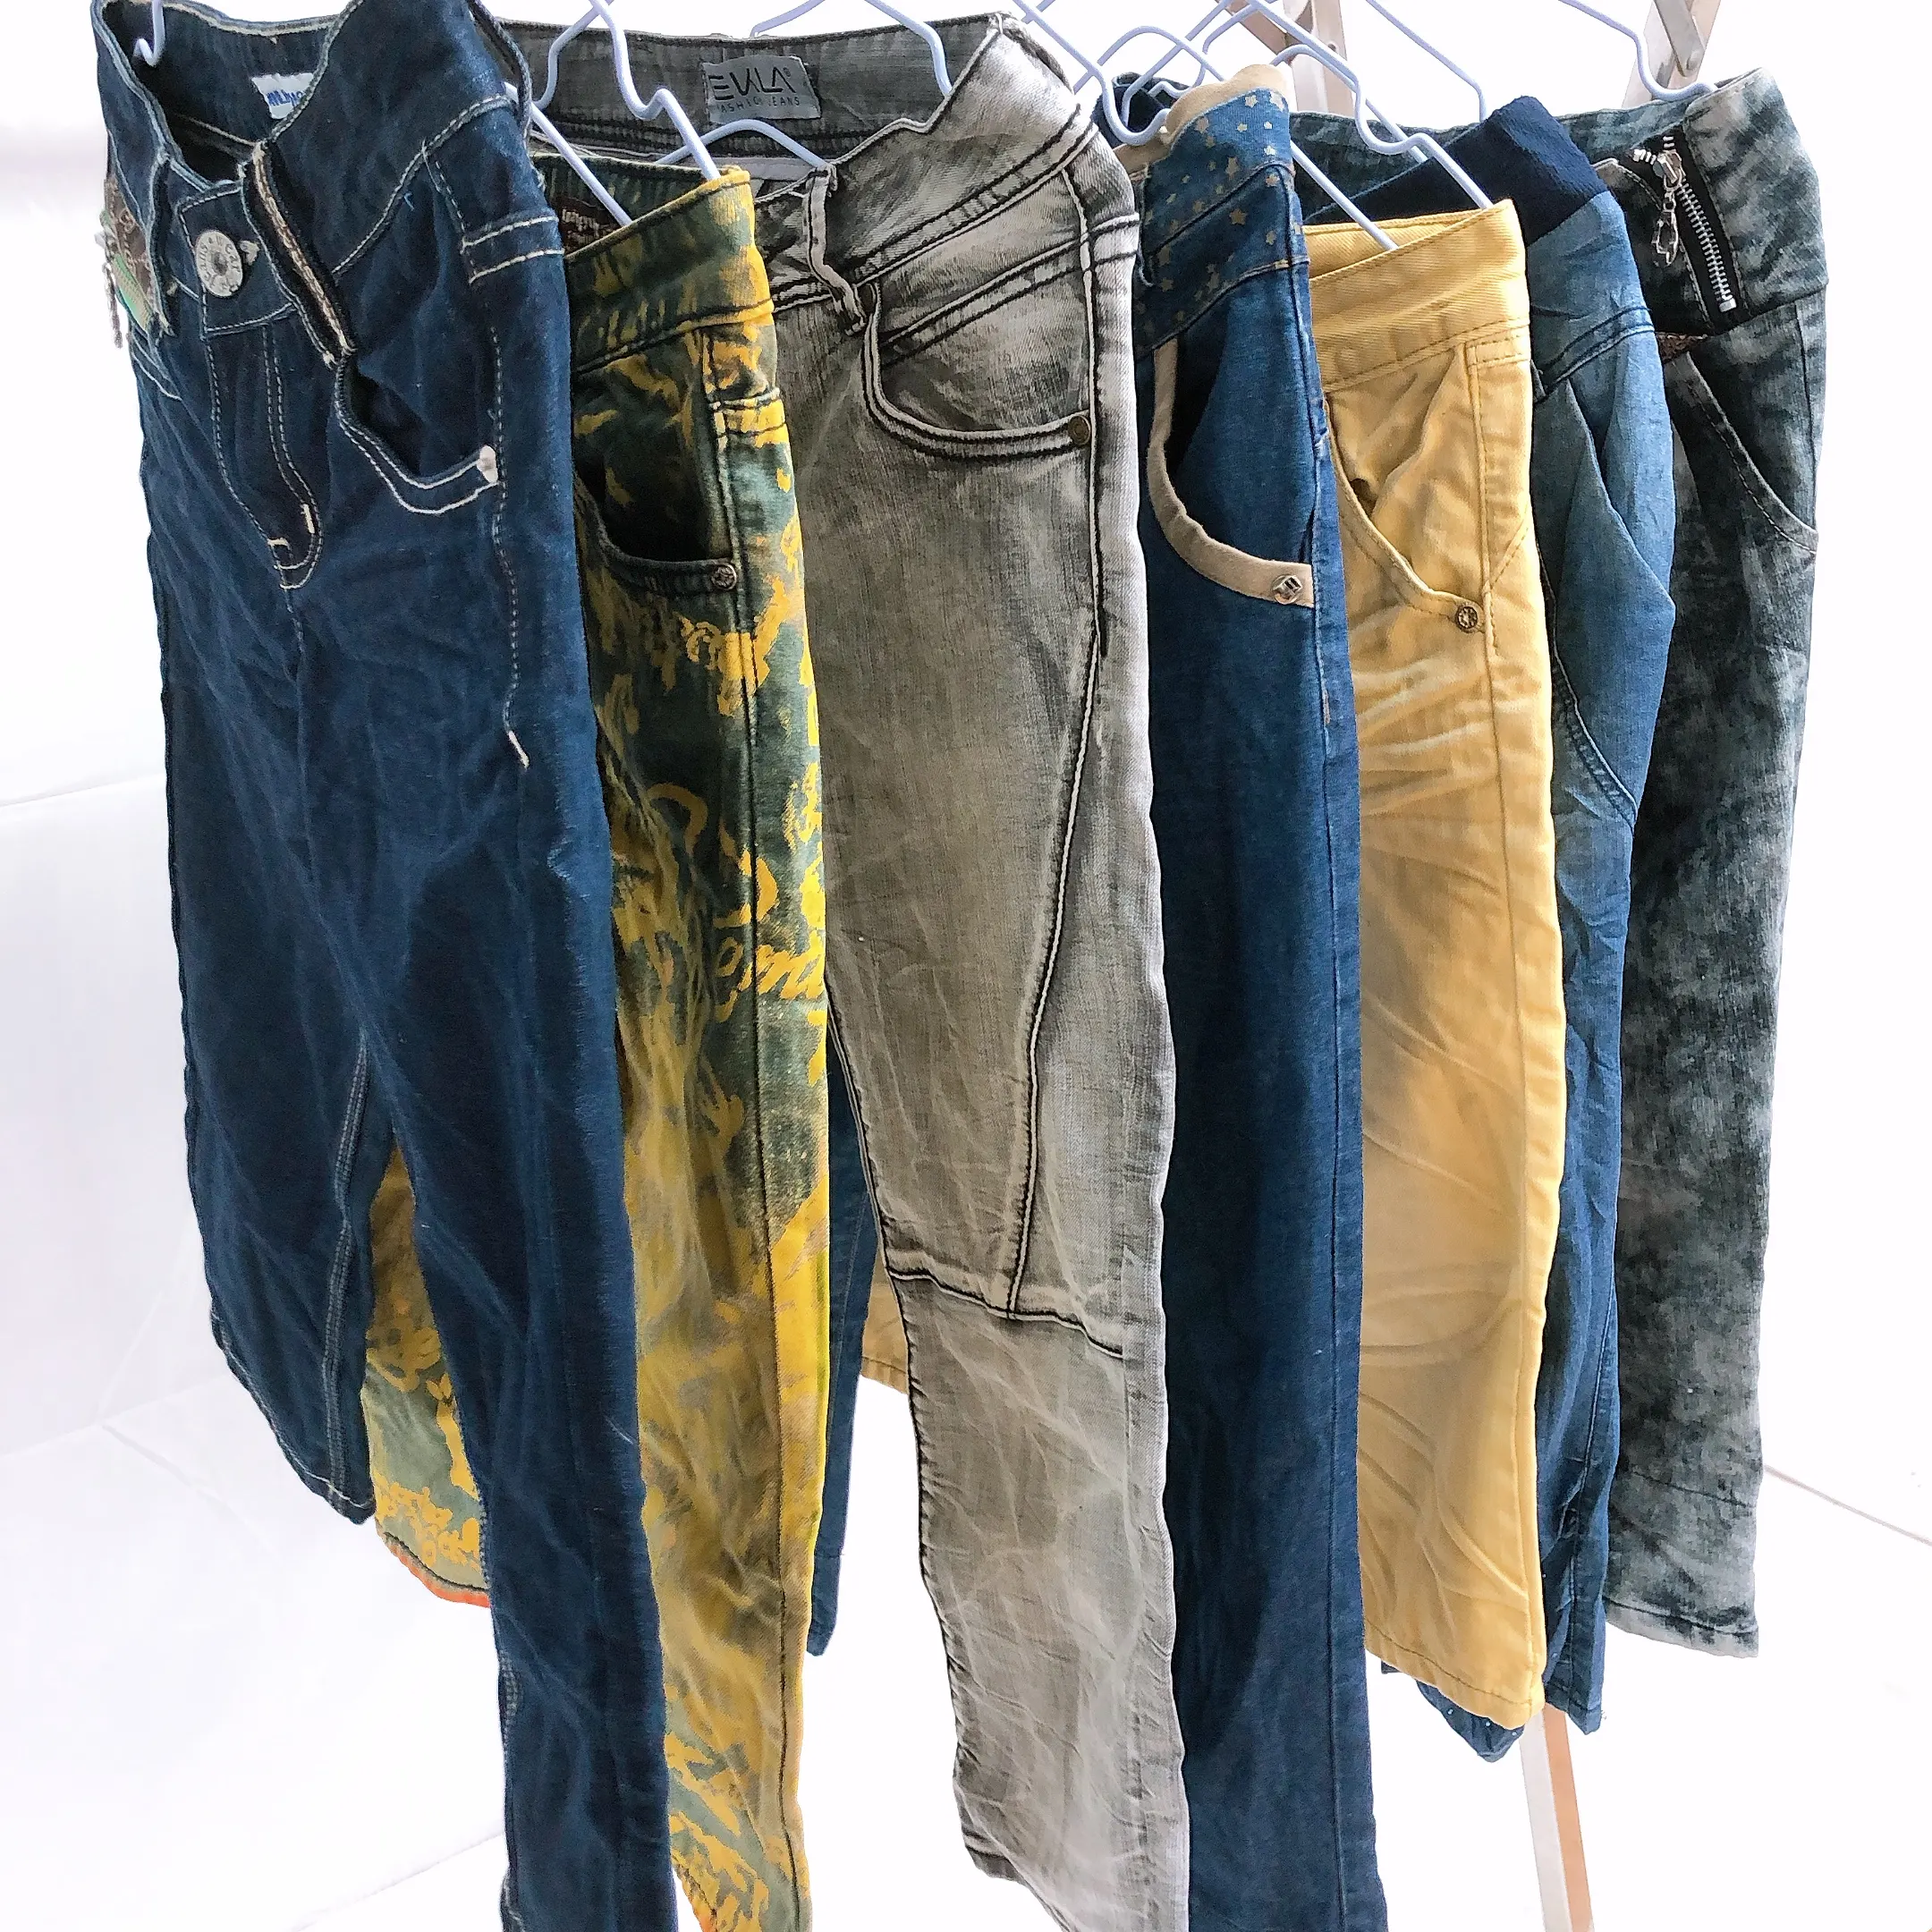 Usado calças de brim das senhoras usadas cor escura calças jeans atacado roupas usadas